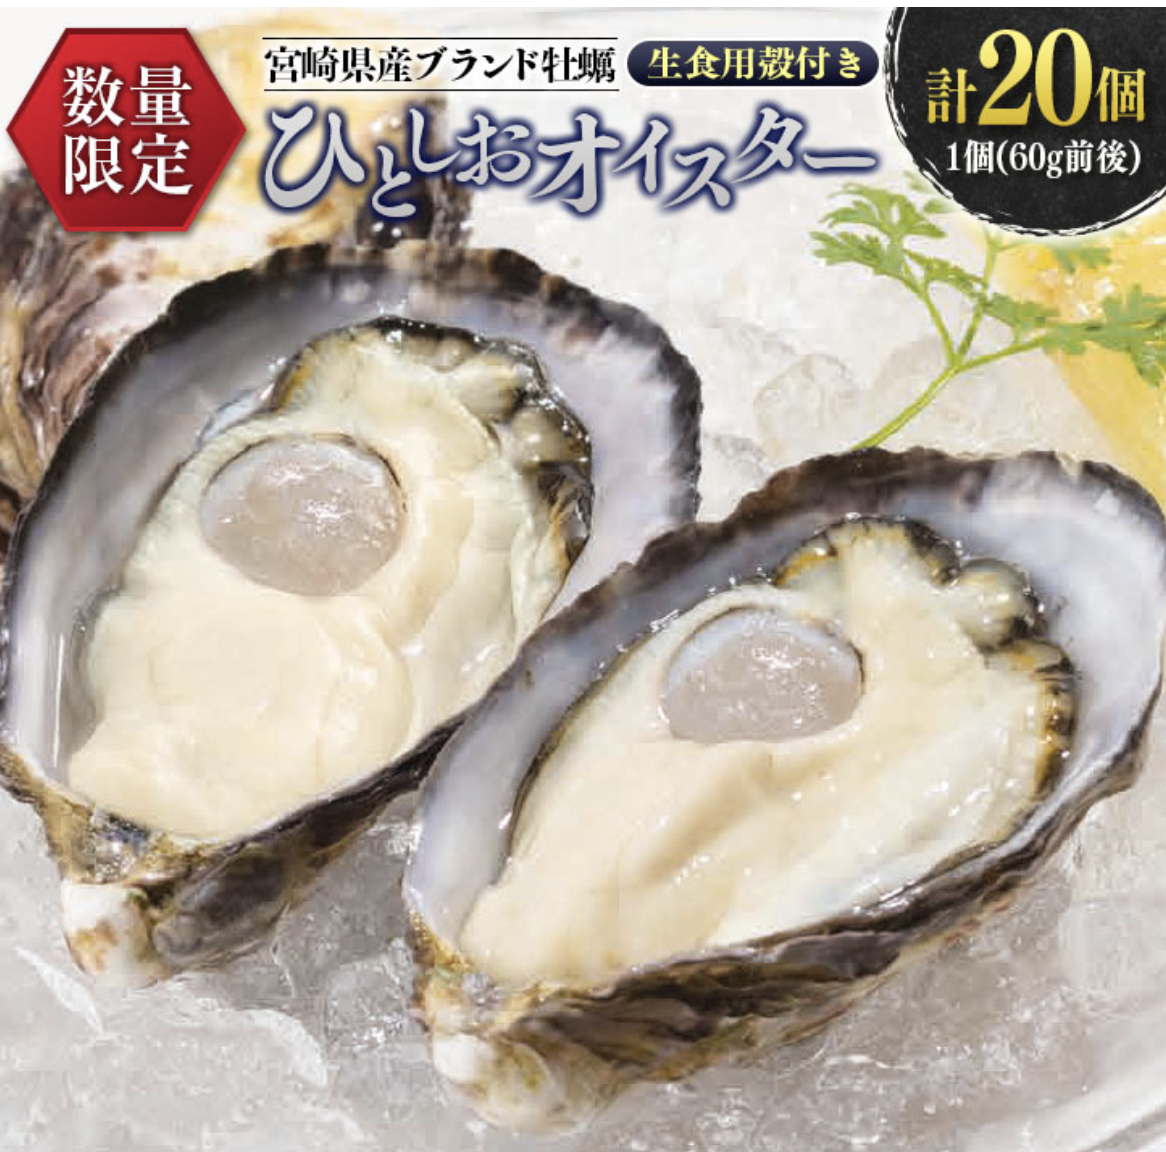 宮崎県産ブランド牡蠣 ひとしおオイスター 計20個 生食用殻付き